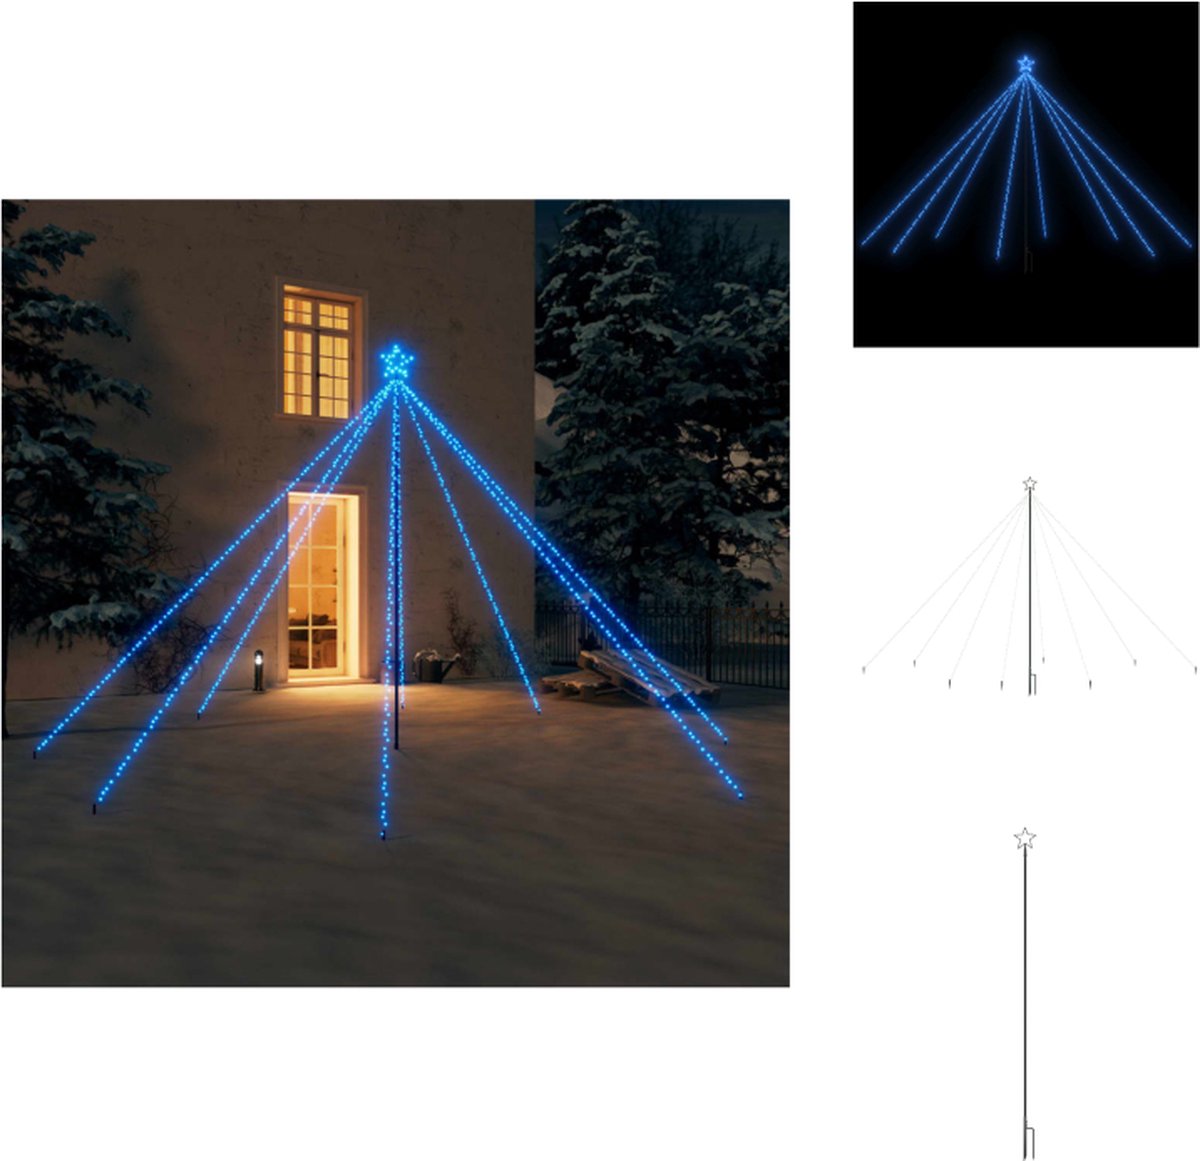 vidaXL Kerstboomverlichting - Watervalontwerp - 576 LEDs - 10m Stroomsnoer - IP44 Waterbestendig - Blauw - 3.6m Hoogte - Decoratieve kerstboom